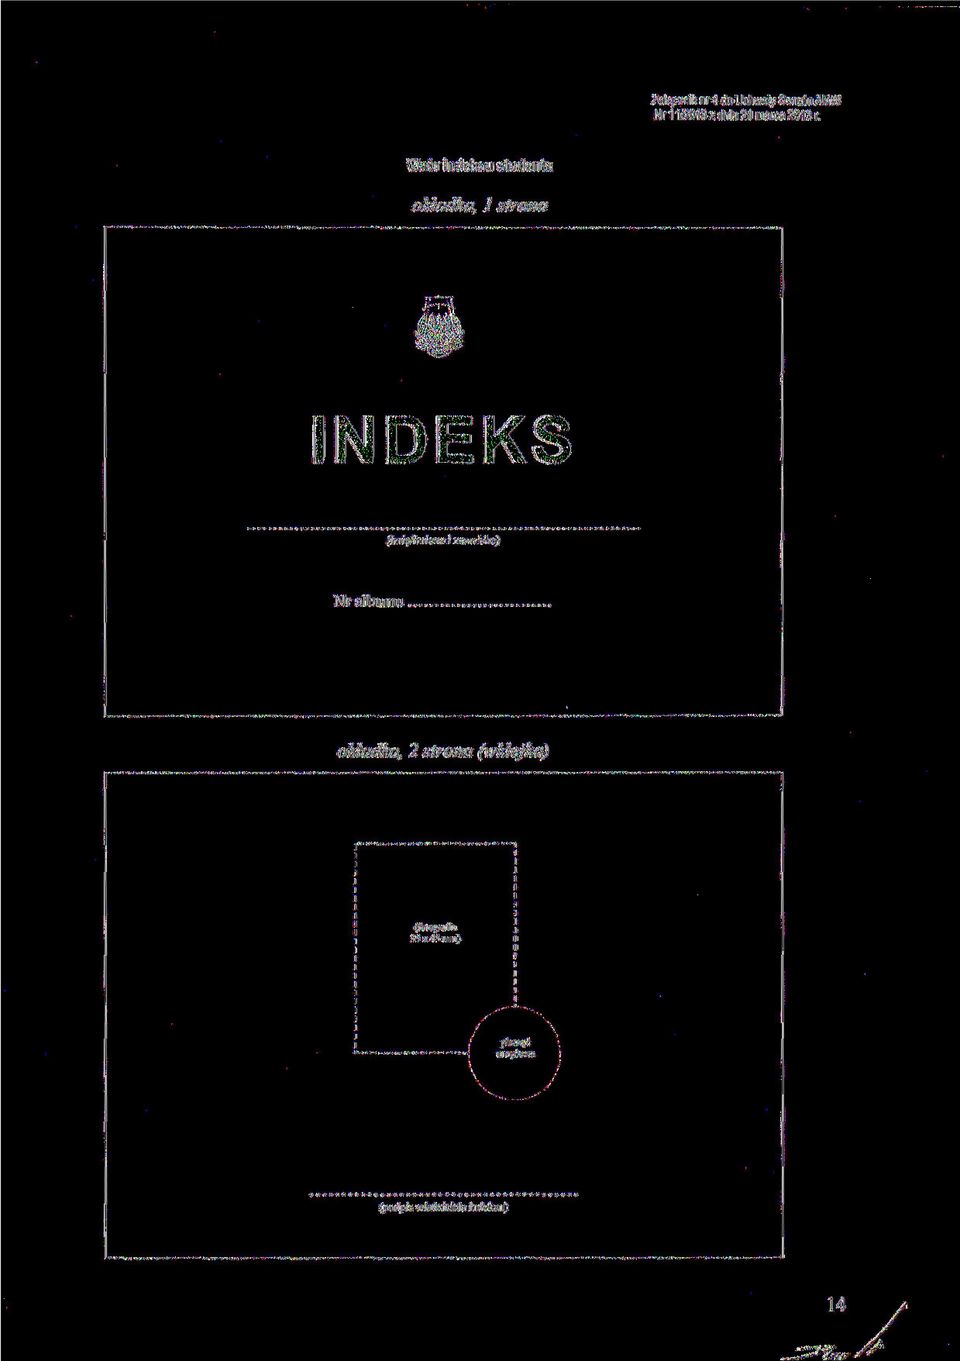 Wzór indeksu studenta okładka, l strona INDEKS (imię/imiona i